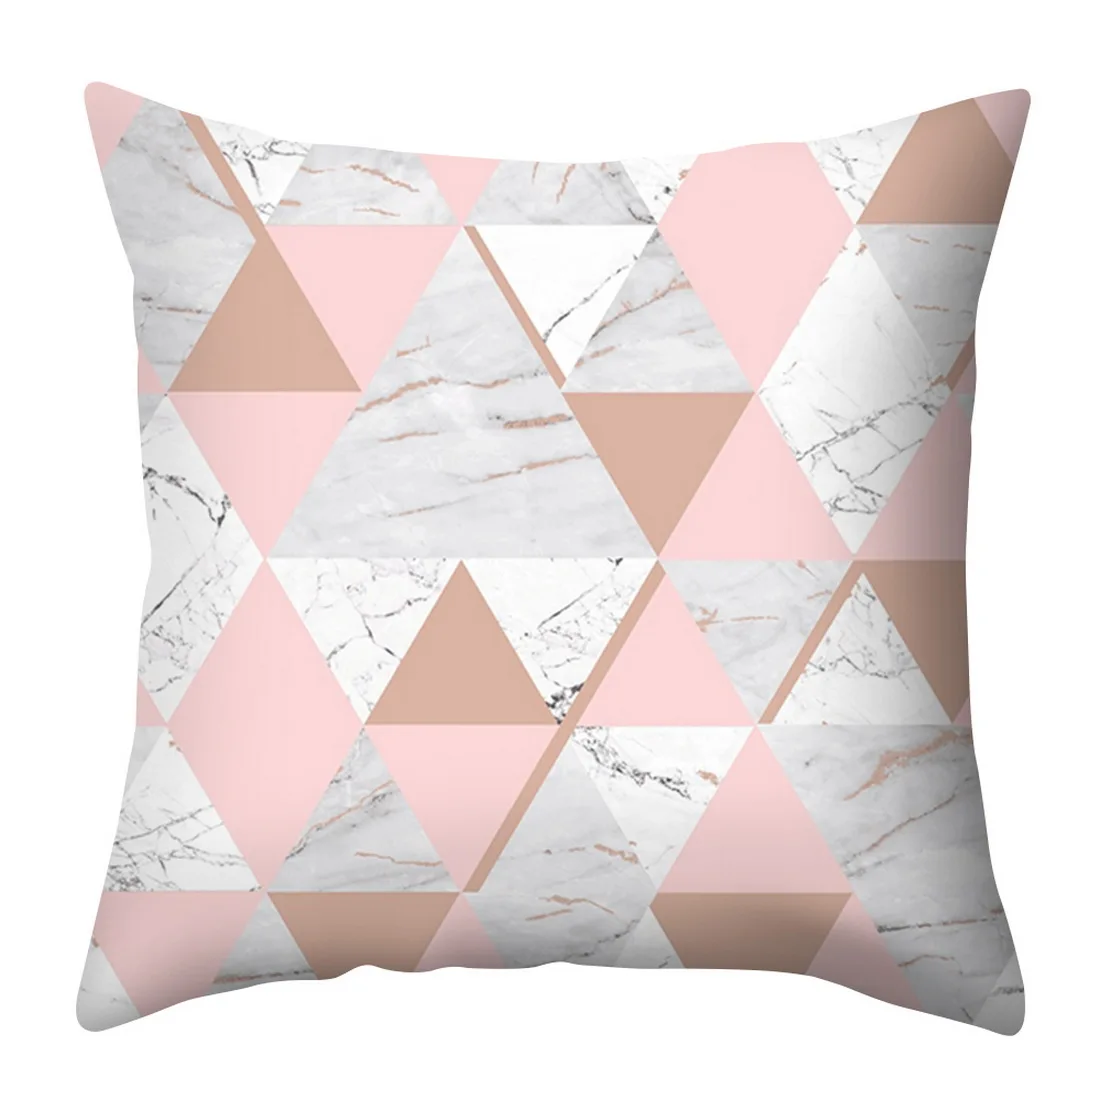 Urijk розовый геометрический чехол для подушки с Северными мотивами ананас бросок наволочка полиэстер чехол для подушки дивана кровать Декоративная Подушка - Цвет: 16